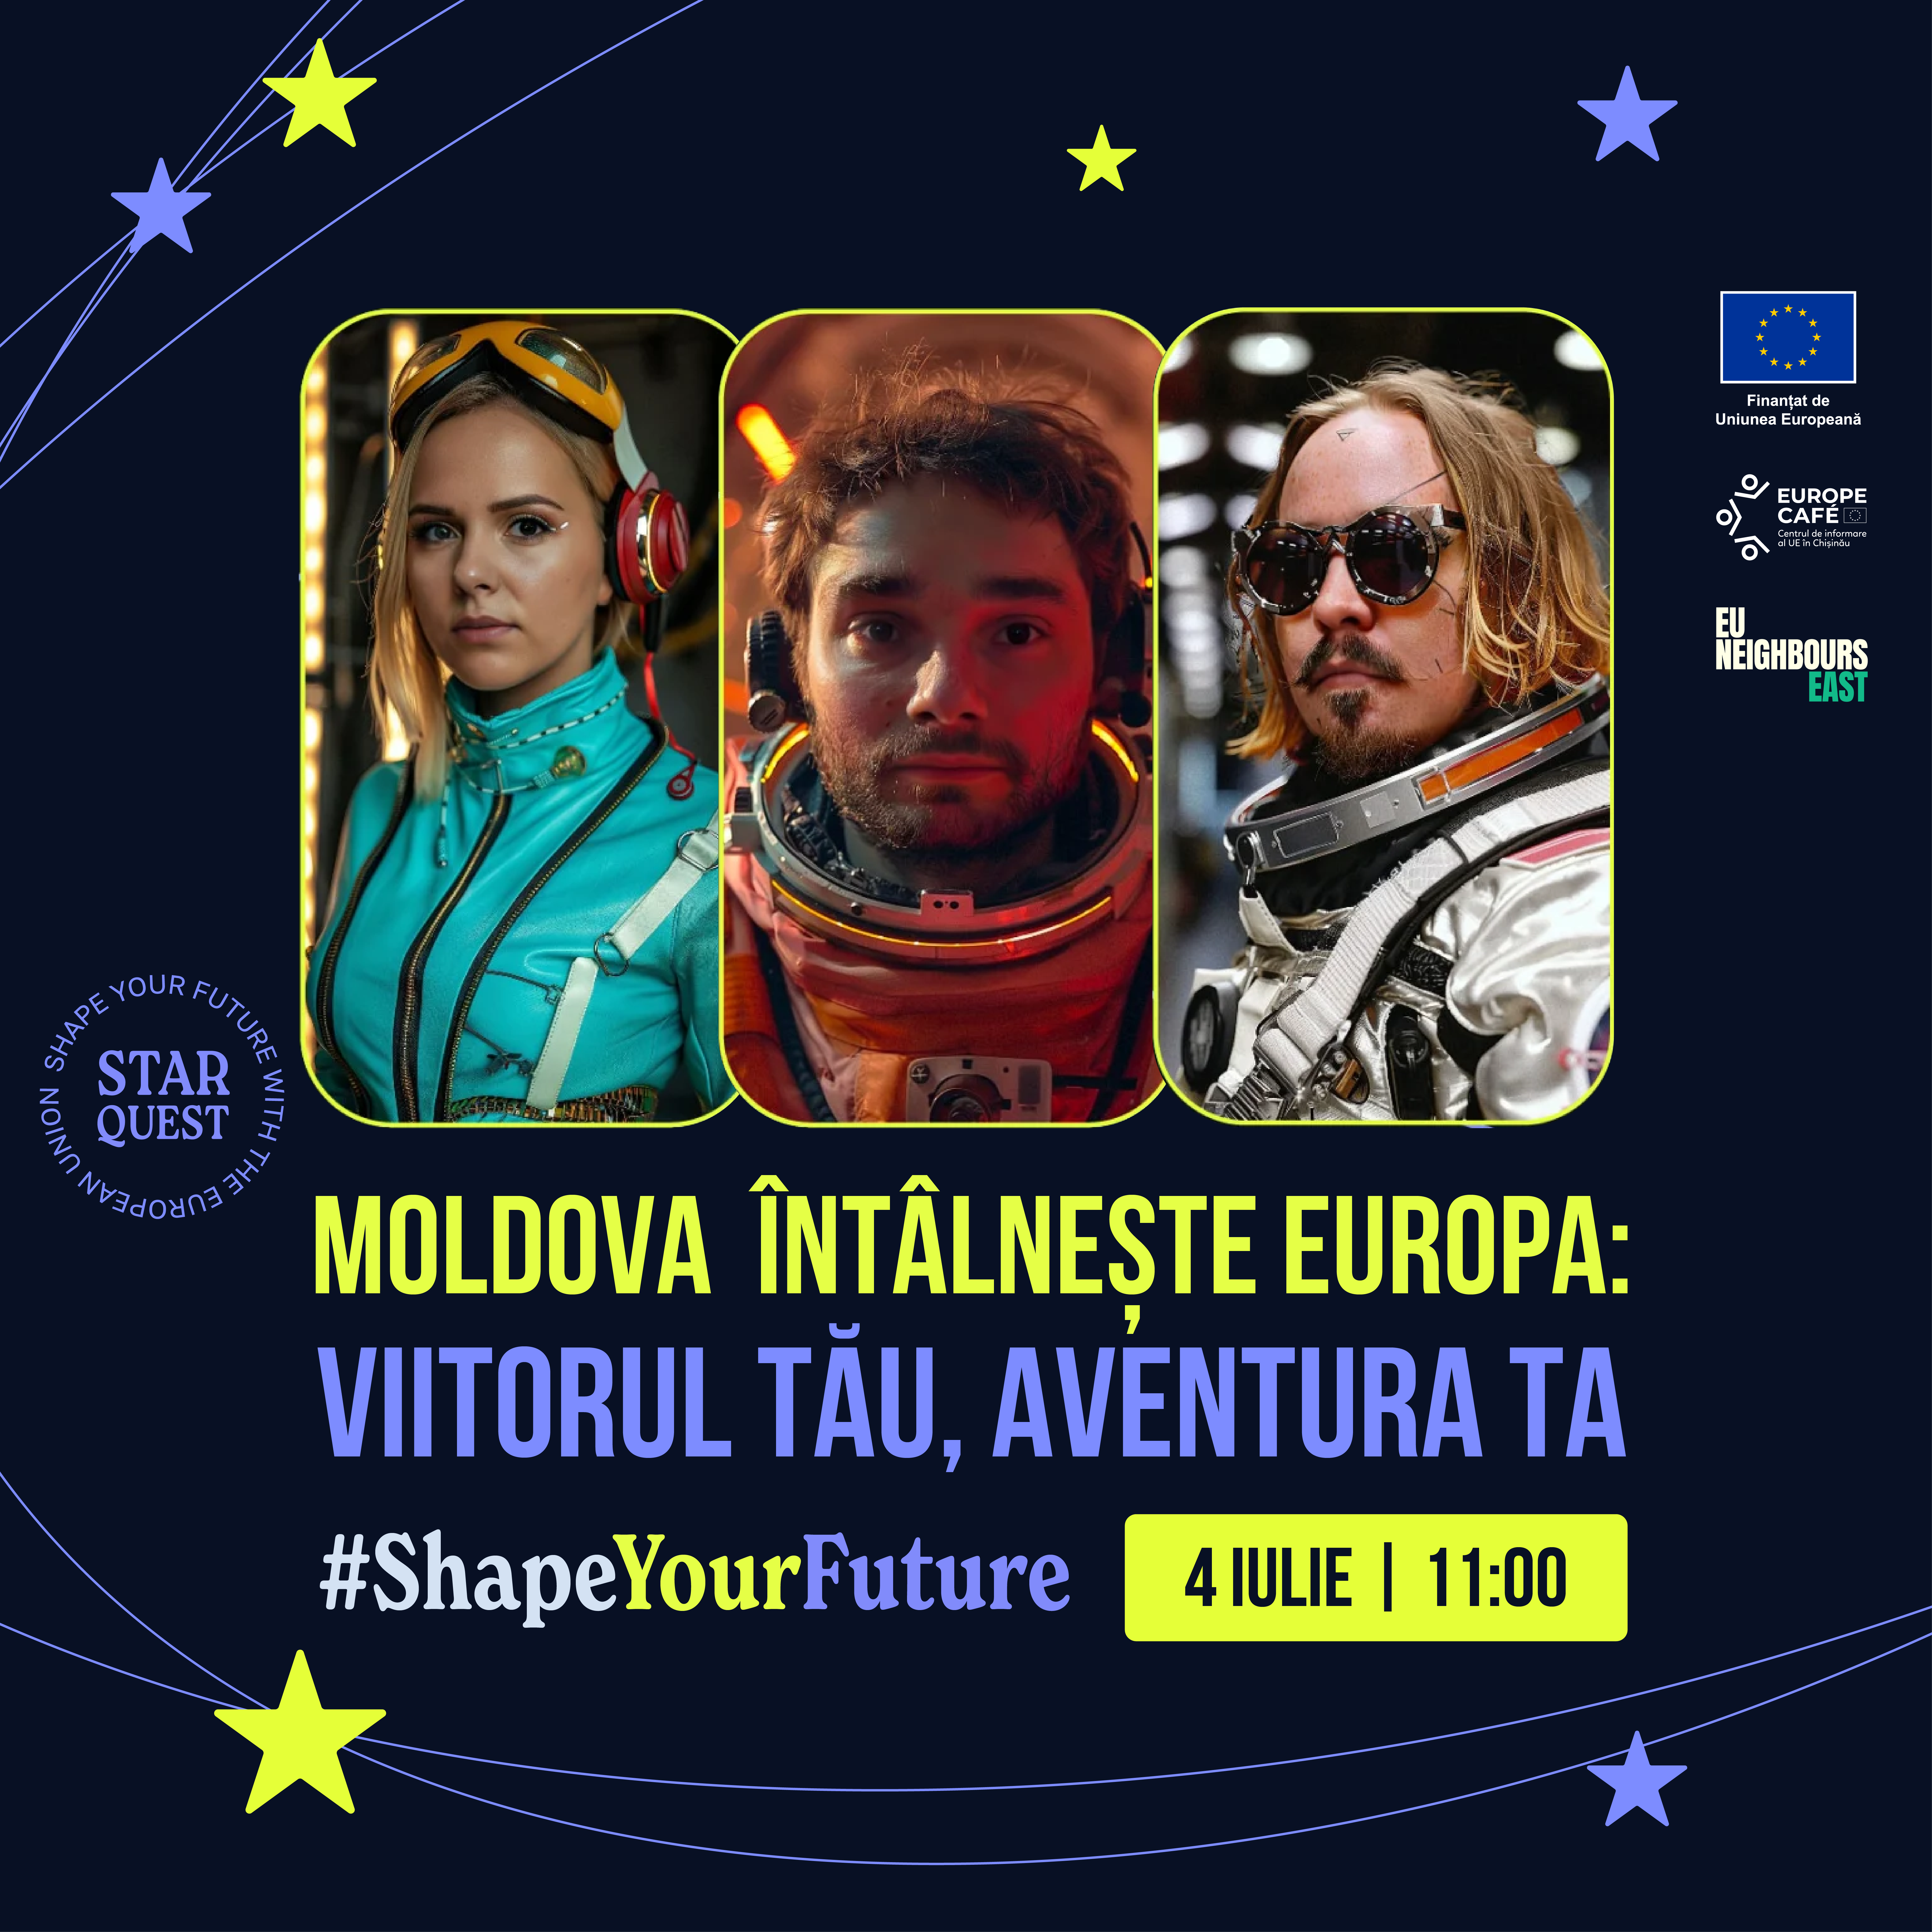 Хотите узнать, как Людмила Адамчук, Елисей Латул и Кэтэлин Лунгу из Молдовы объединились с другими лидерами общественного мнения из 4 других европейских стран?